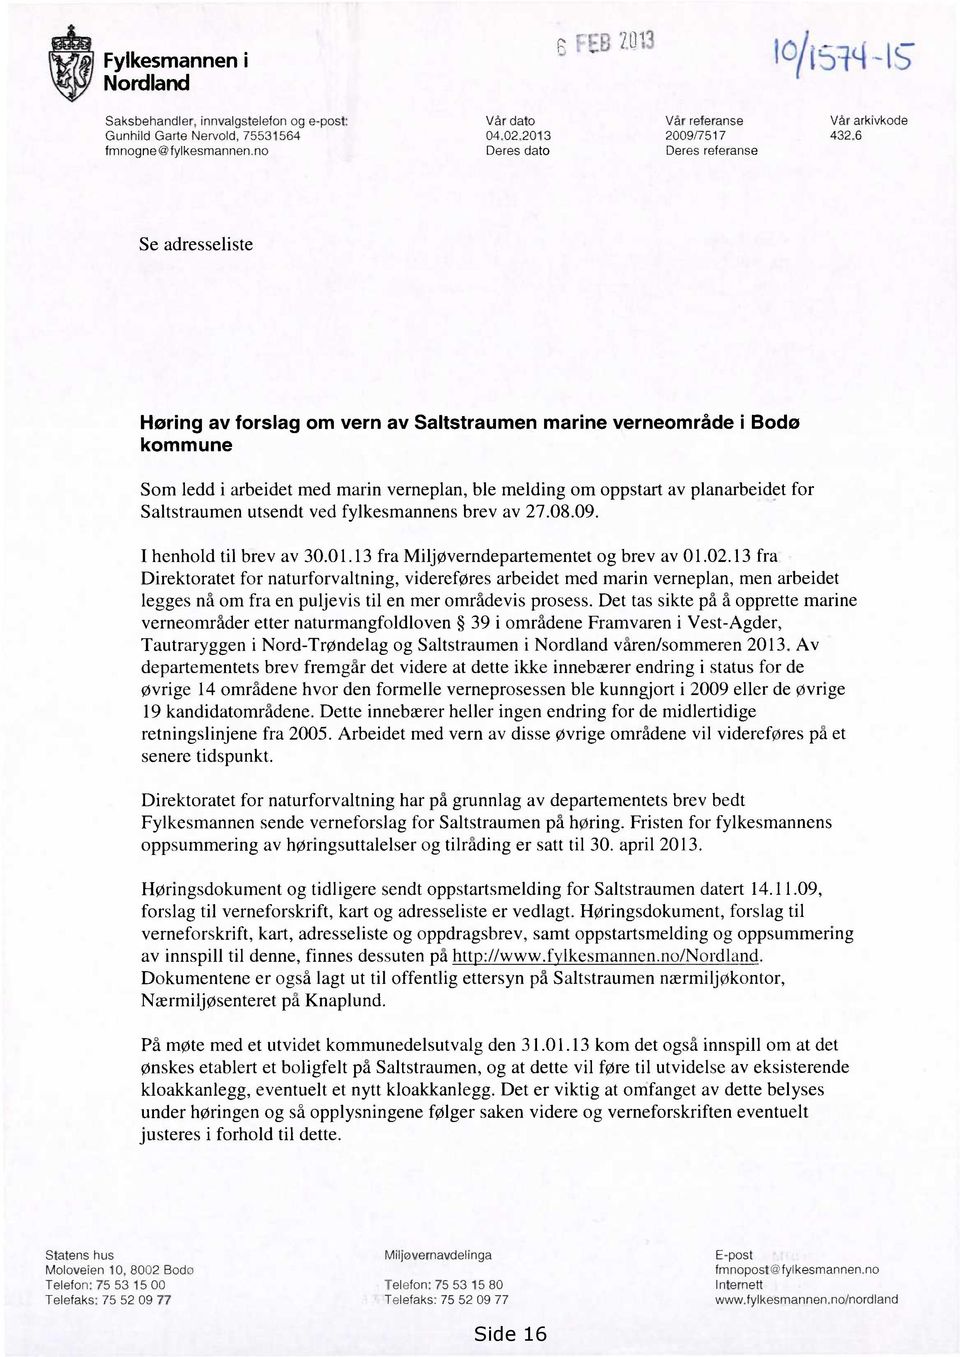 planarbeidet for Saltstraumen utsendt ved fylkesmannens brev av 27.08.09. I henhold til brev av 30.01.13 fra Miljøverndepartementet og brev av 01.02.